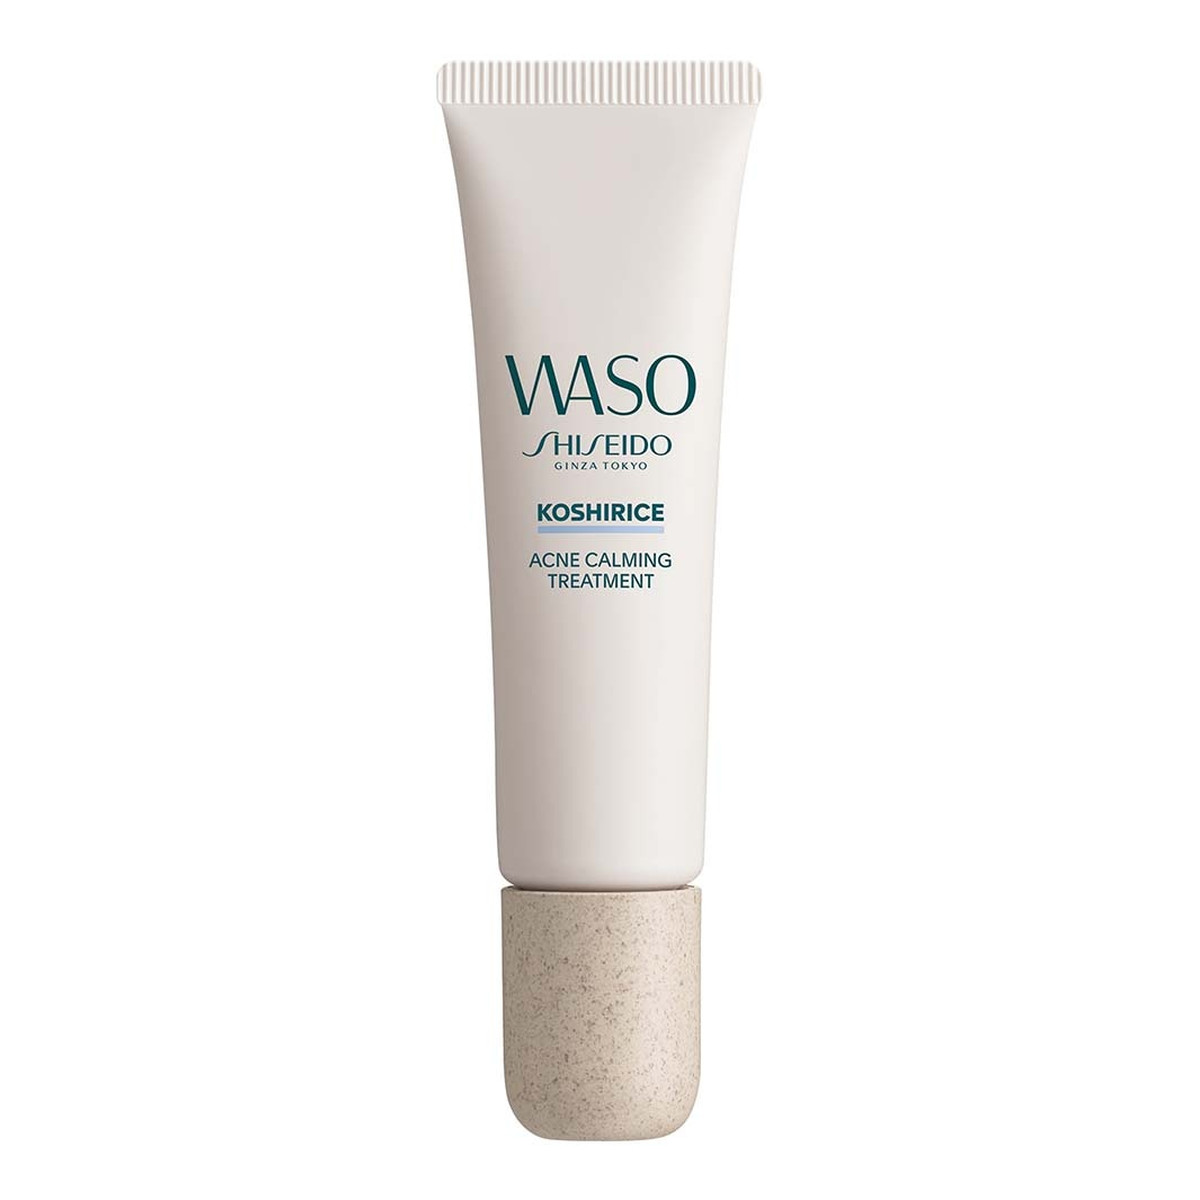 Shiseido Waso Koshirice Acne Calming Spot Treatment punktowy Żel do twarzy przeciw niedoskonałościom 20ml